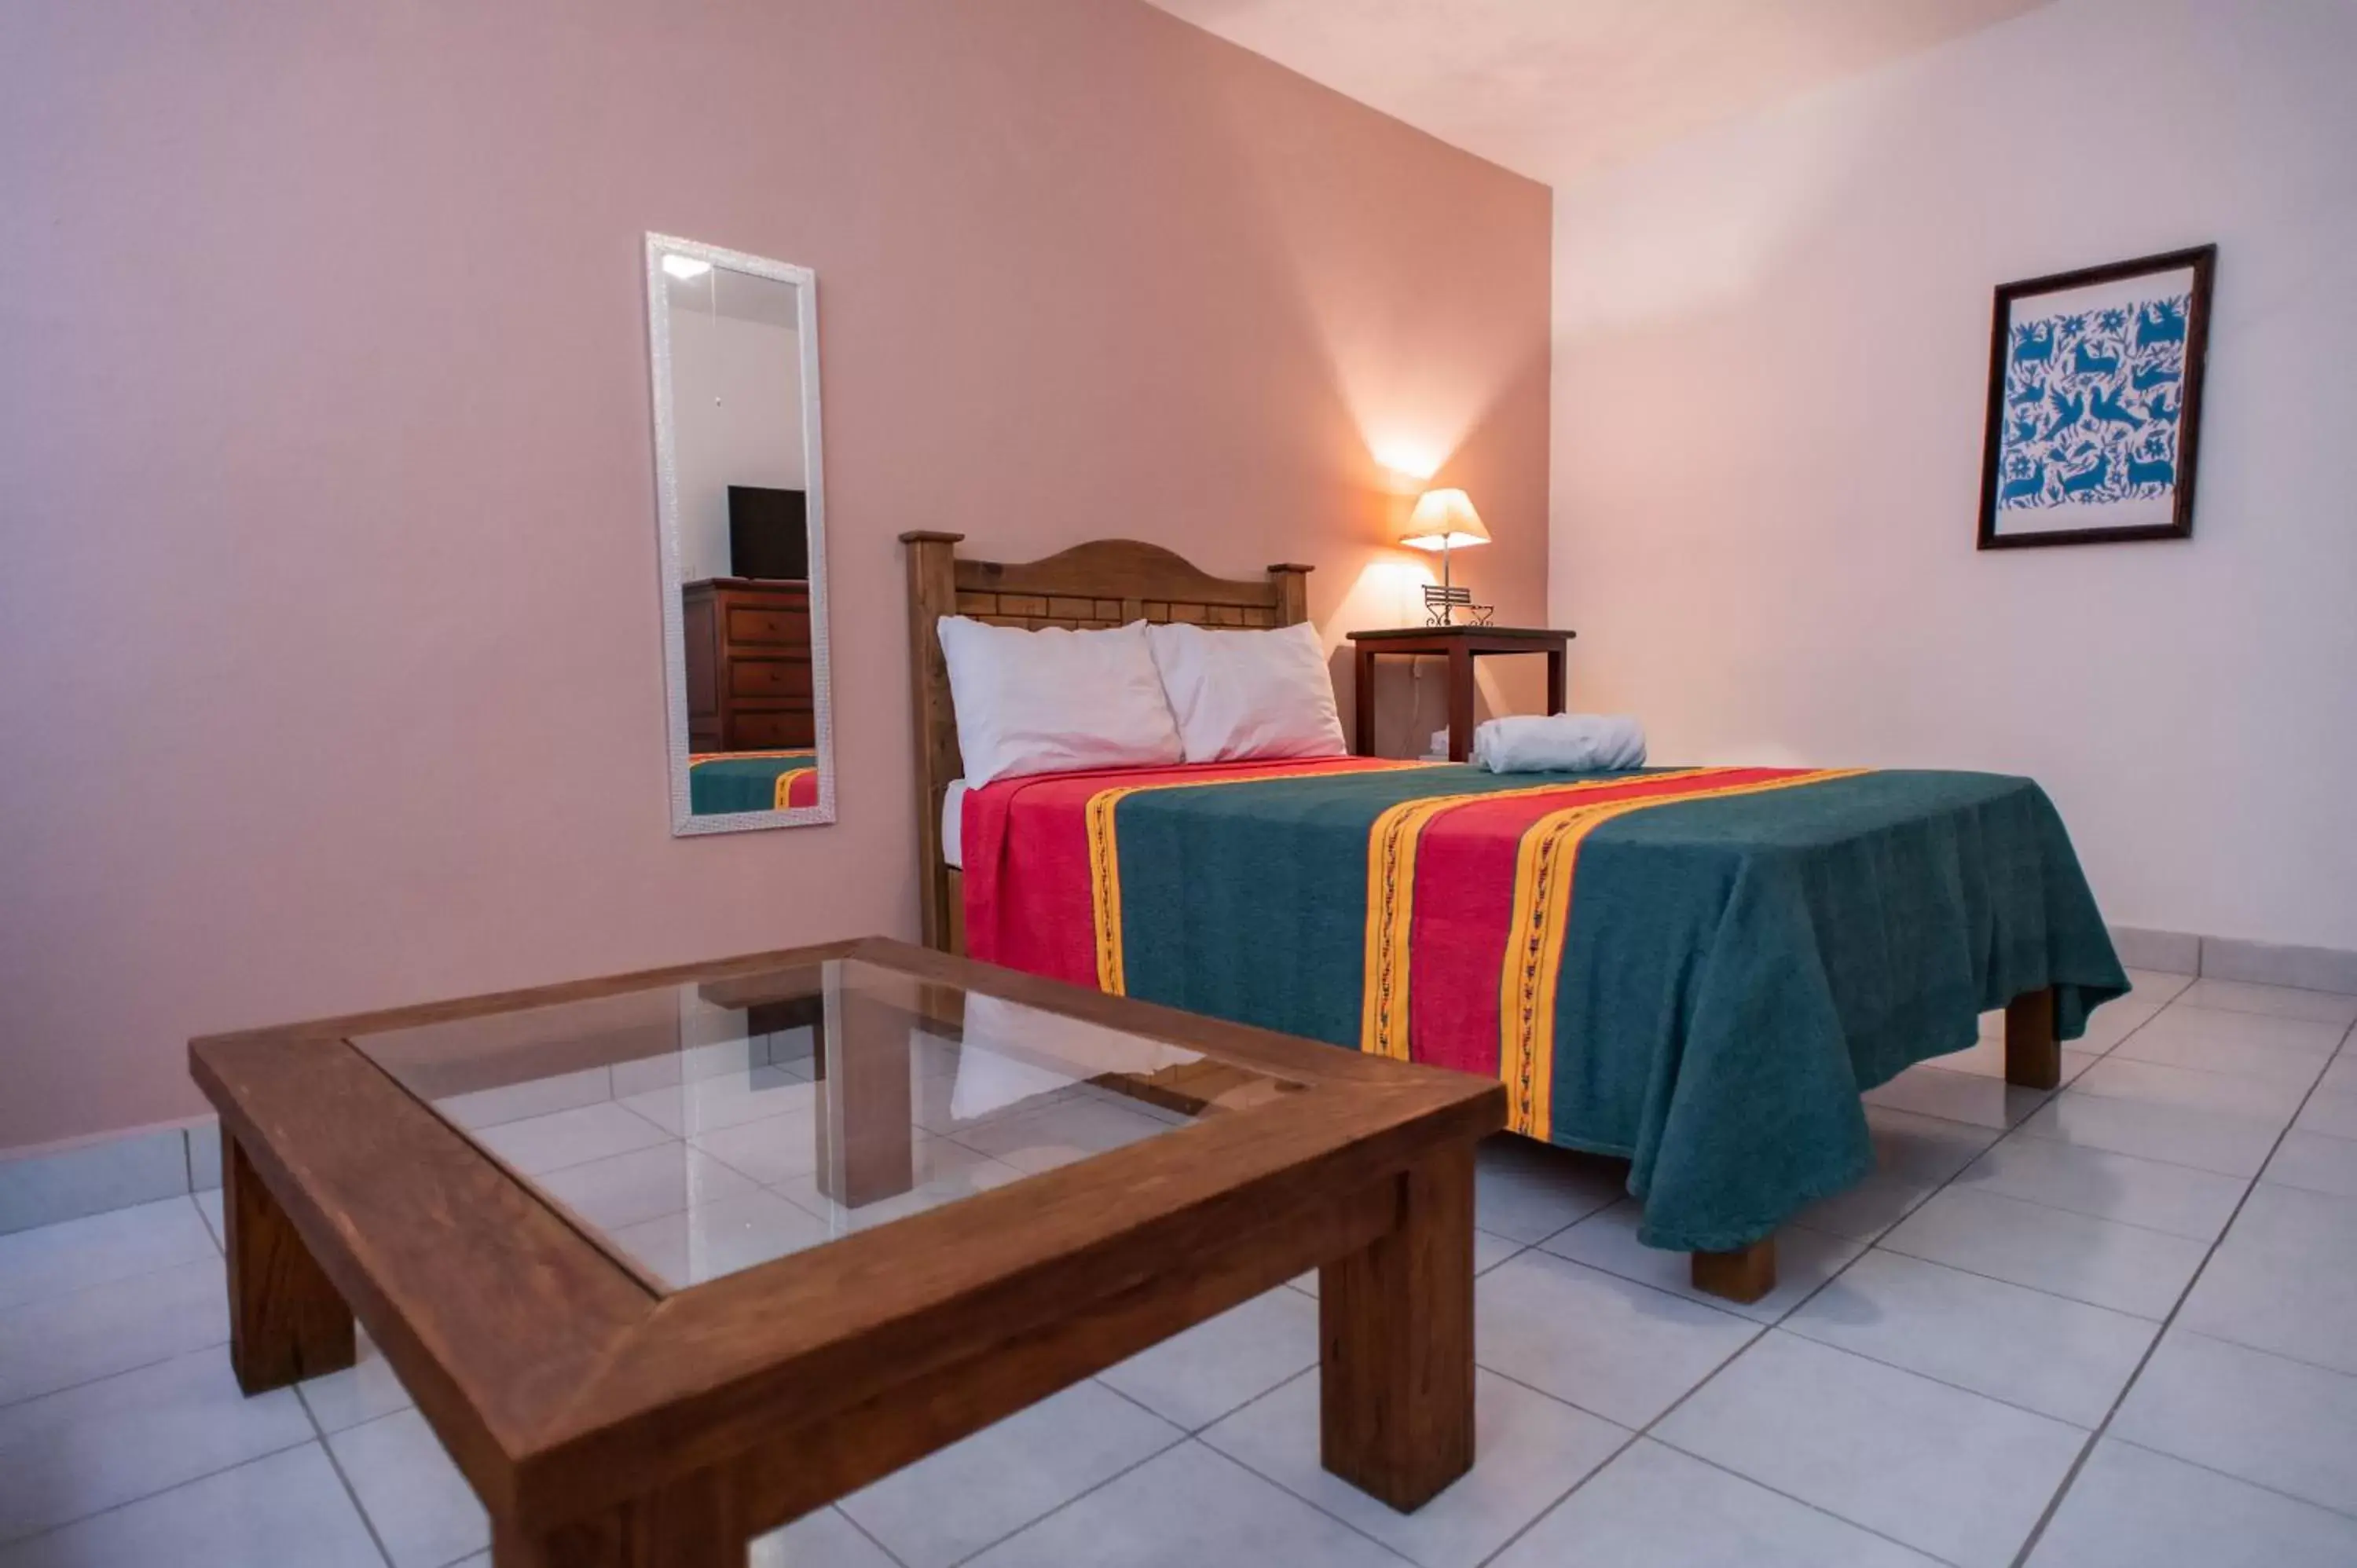 Bedroom in Posada San Miguelito